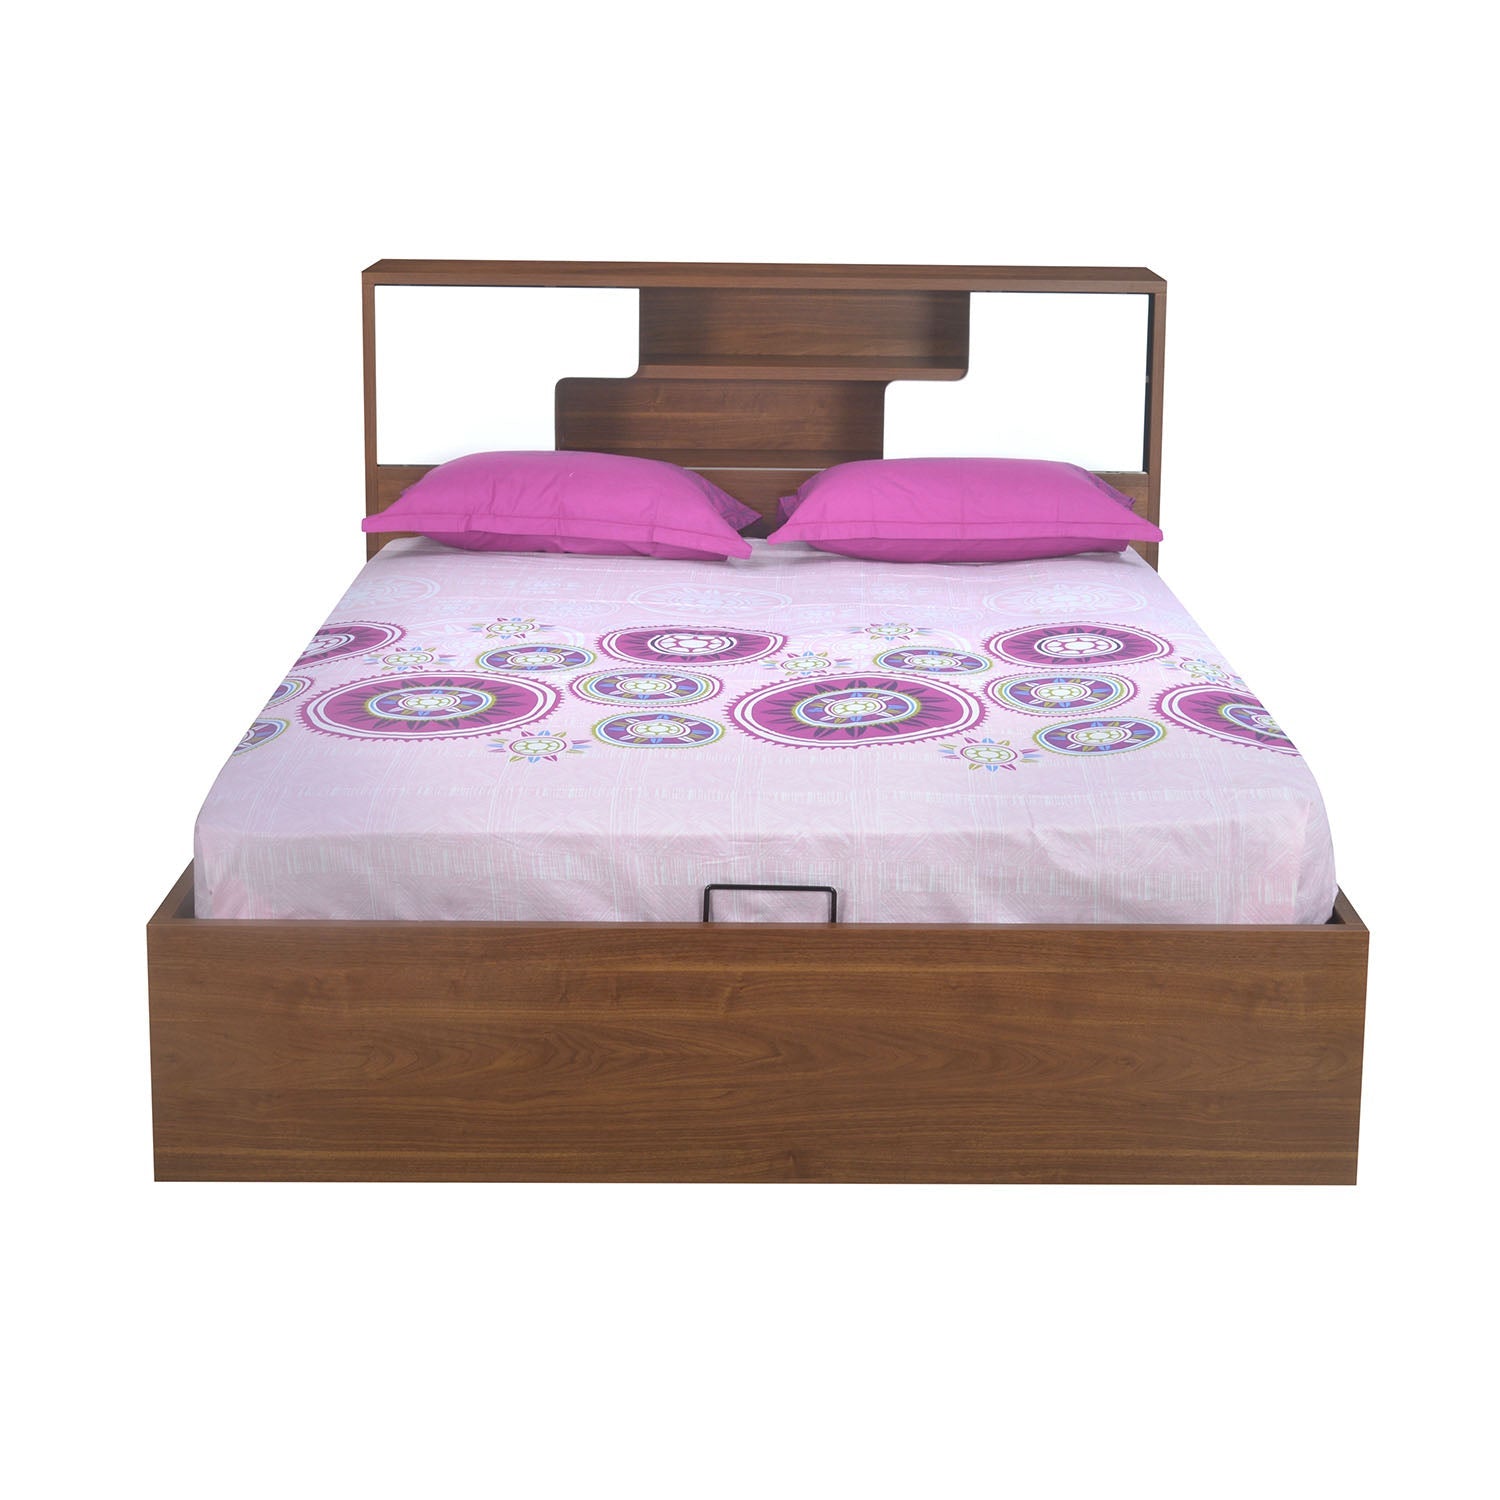 Rubix King Bed With Hydraulic Storage (White & Walnut)